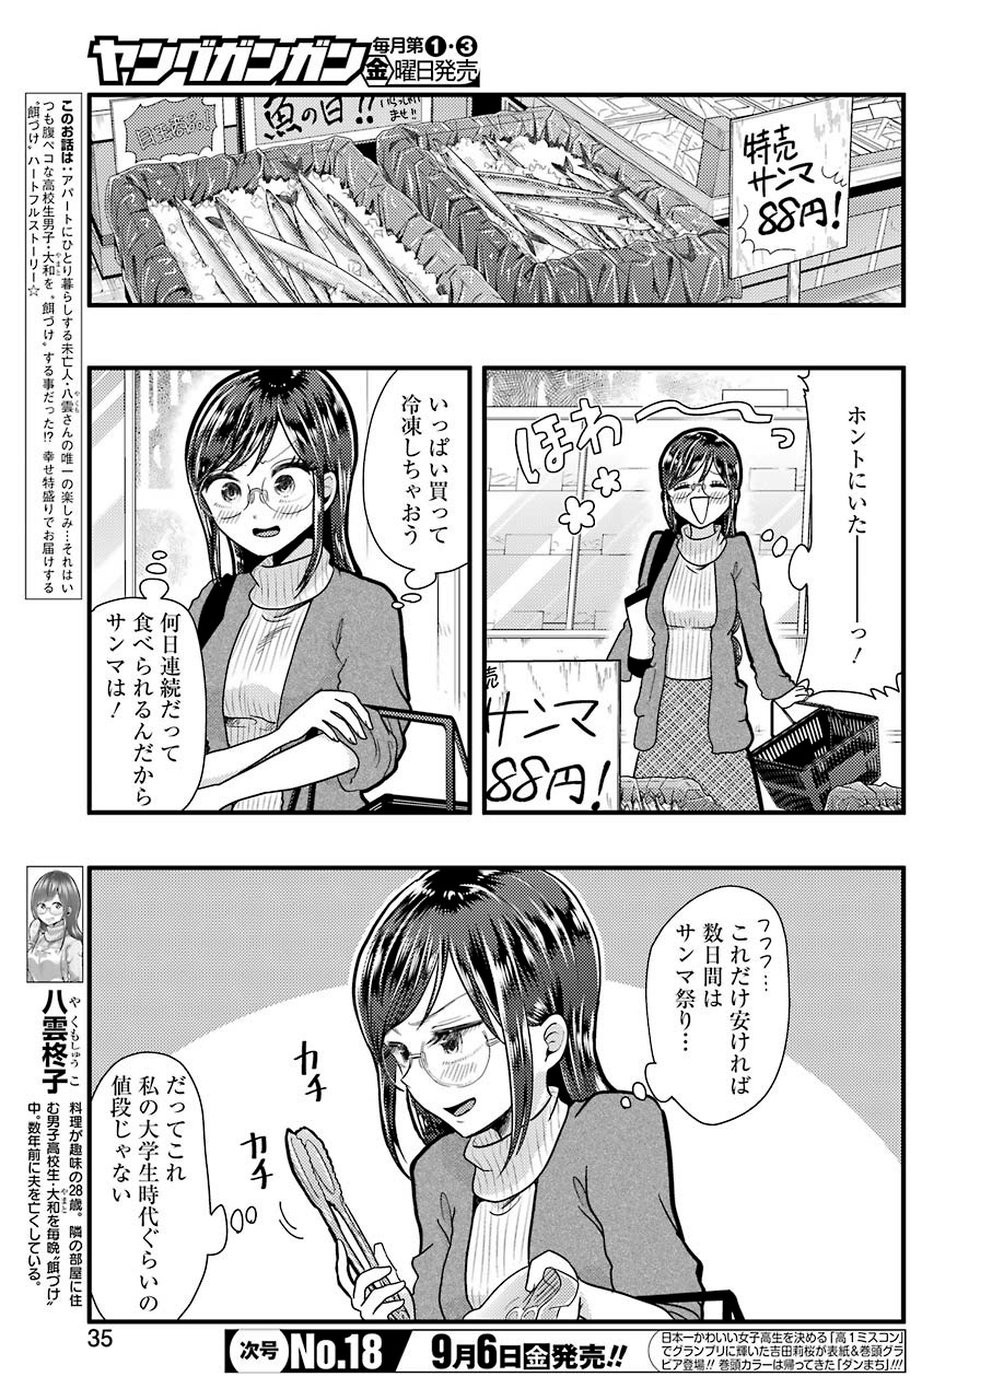 Yakumo-san wa Edzuke ga Shitai. - Chapter 057 - Page 3